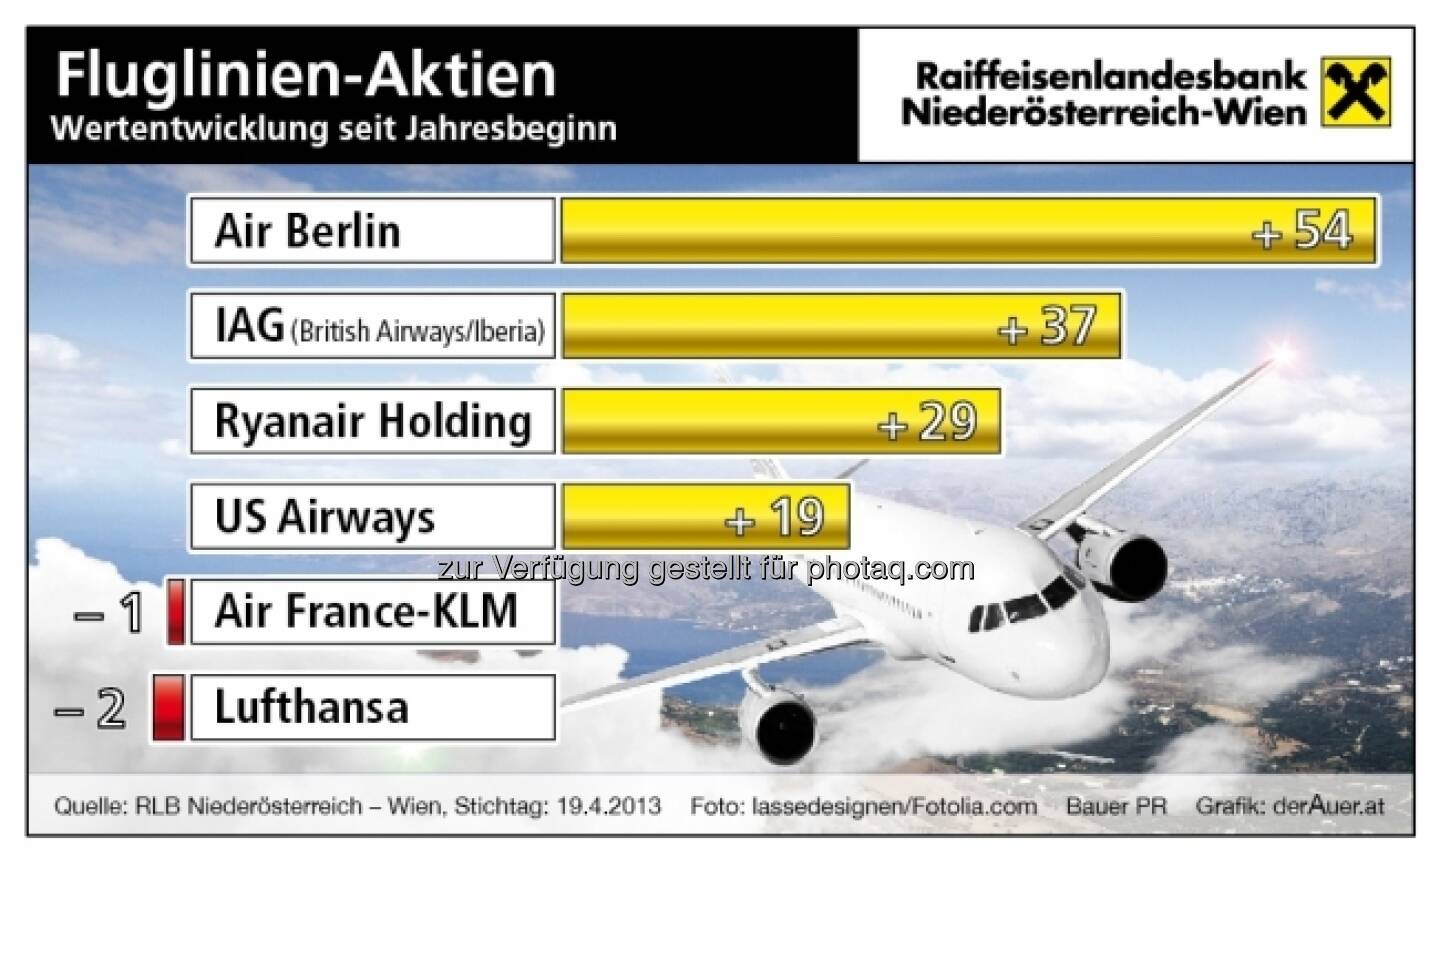 Fluglinien-Aktien, Performance: Air Berlin, JAG, Ryanair, US-Airways, Air France-KLM, Lufthansa (c) derAuer Grafik Buch Web